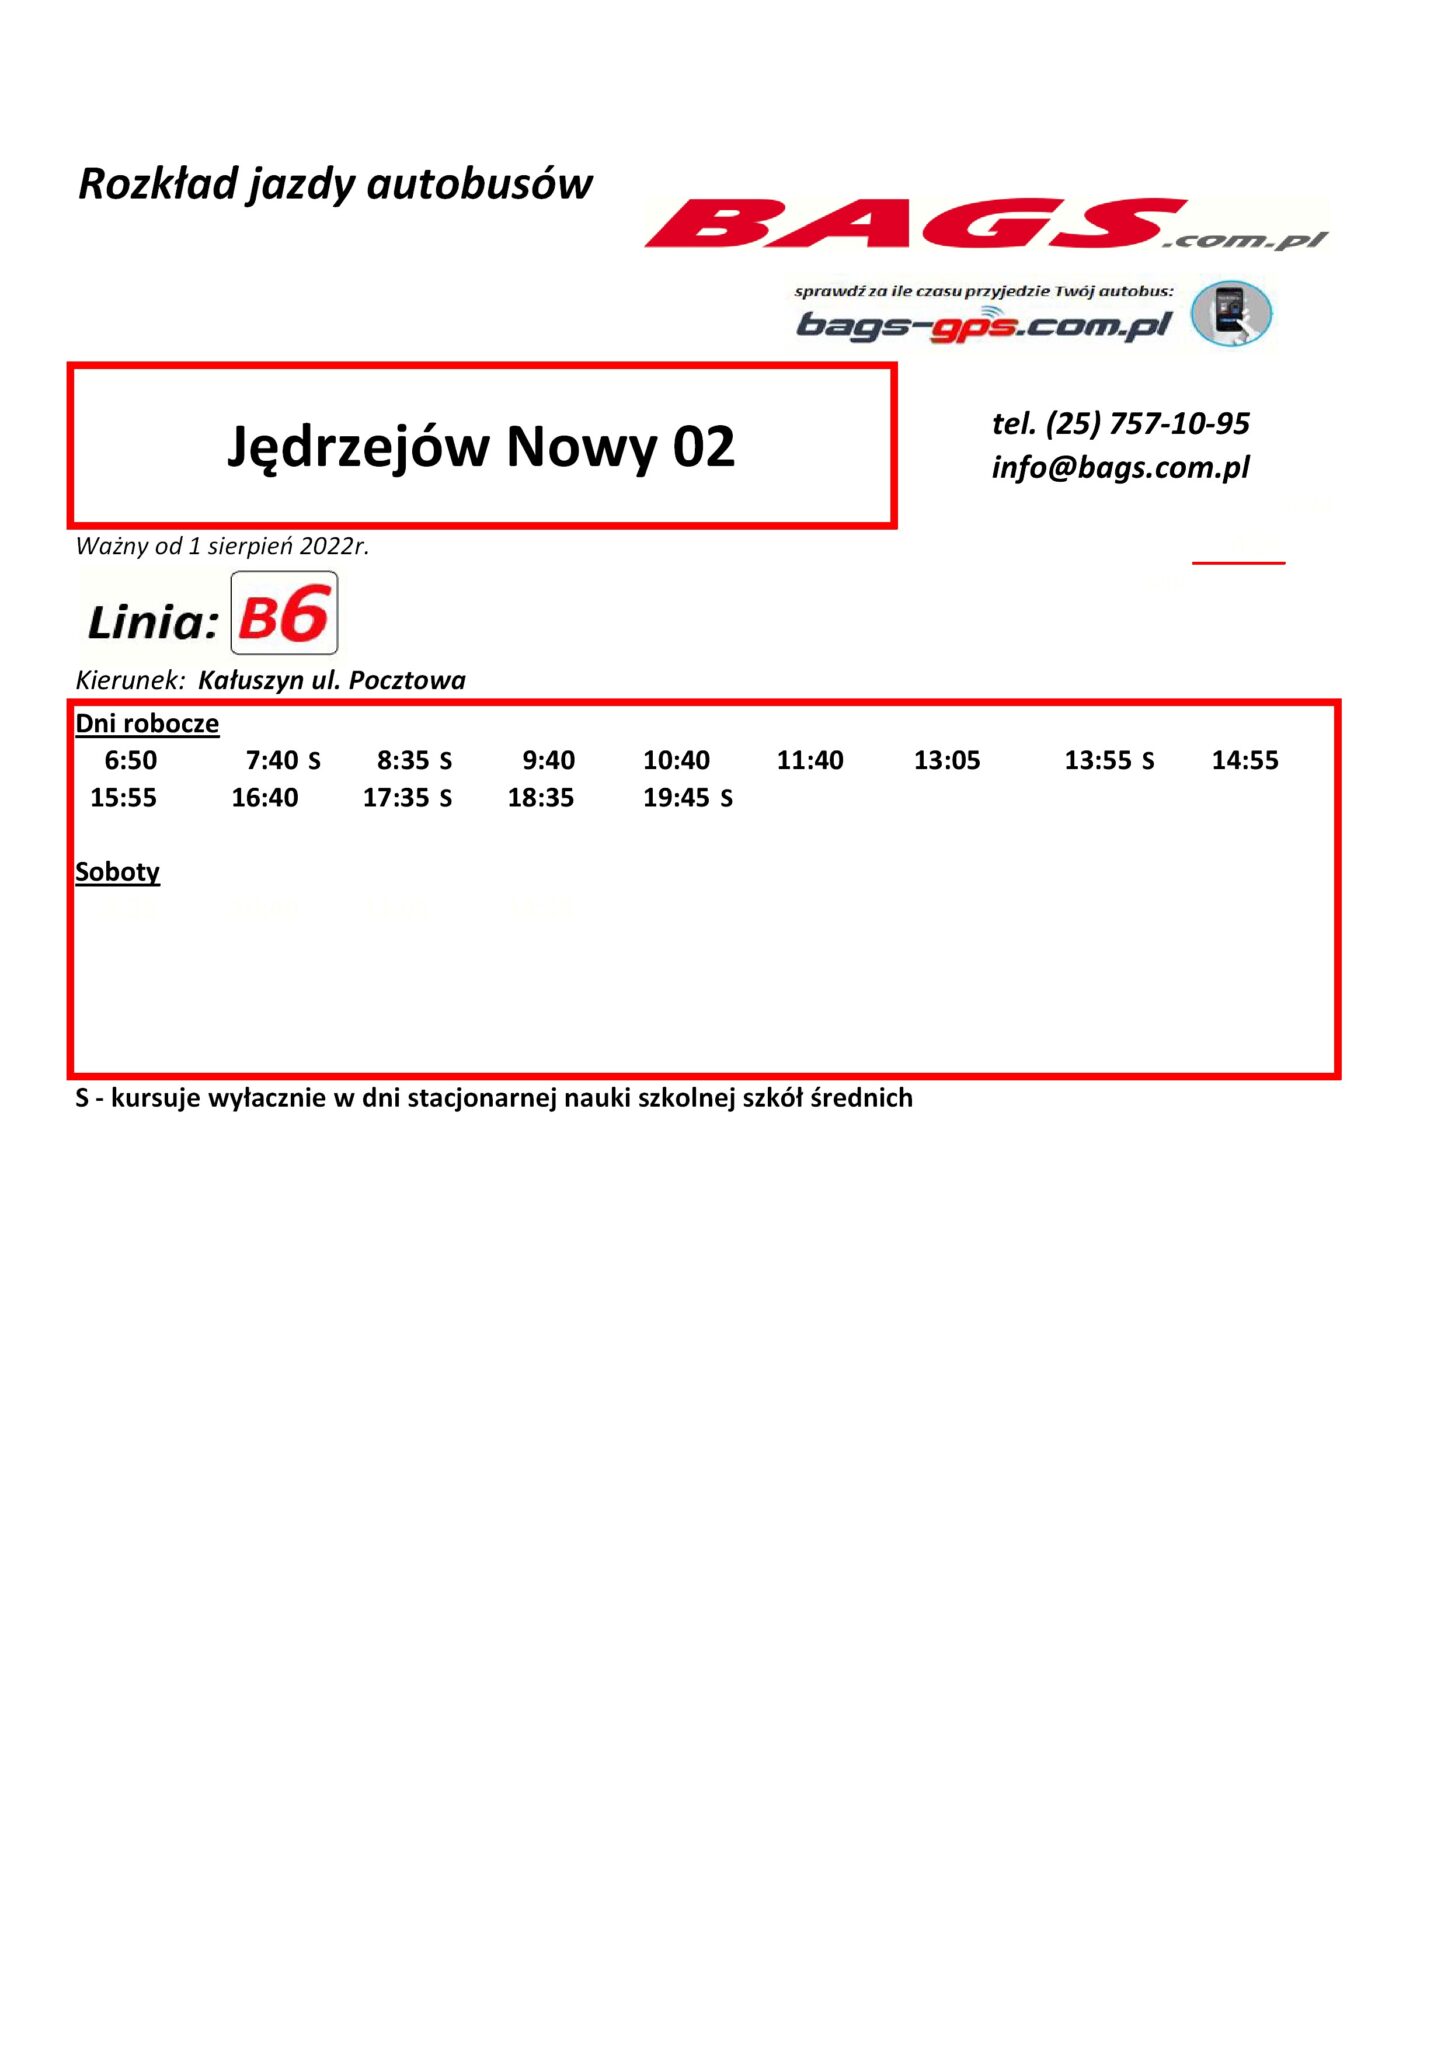 Jedrzejow-Nowy-02--1448x2048